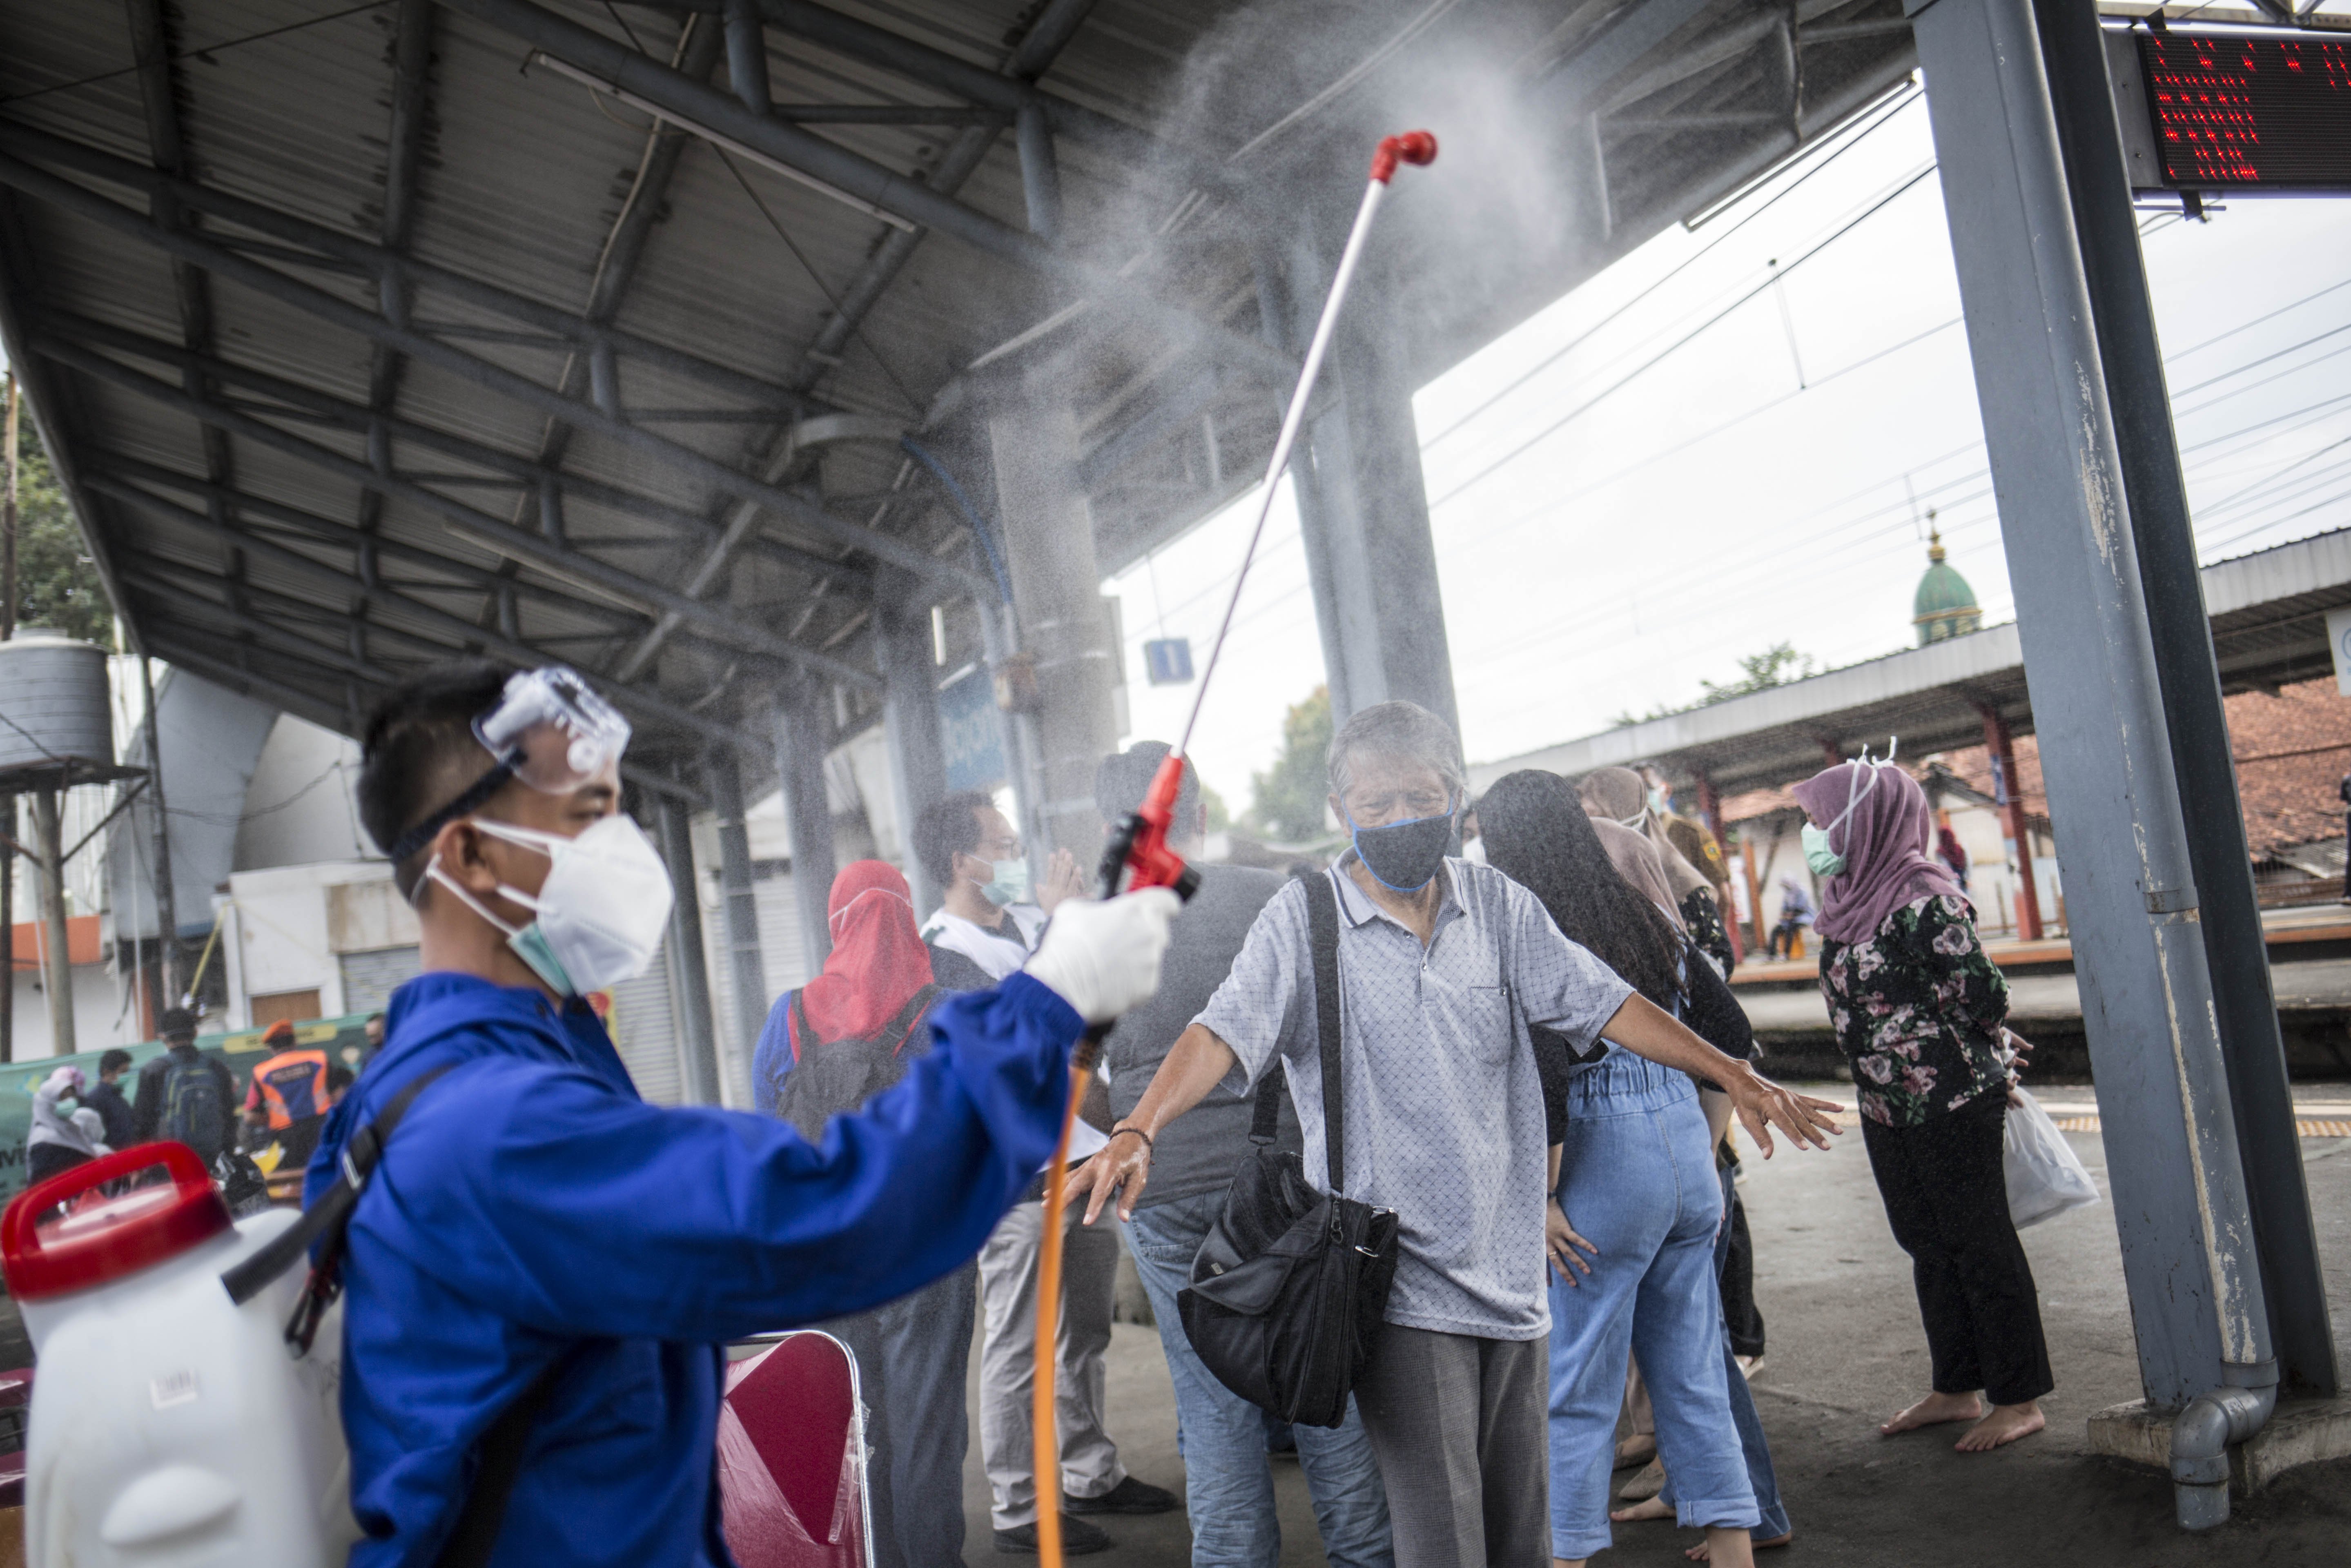 Petugas menyemprotkan disinfektan kepada penumpang KRL Commuter Line setelah melakukan swab tes masal Covid -19 di Stasiun Bojong Gede, Bogor, Jawa Barat, Senin (11/5). Tes swab tersebut dilakukan kepada 200 calon penumpang KRL secara acak sebagai salah satu langkah untuk mendeteksi dan mencegah penyebaran virus COVID-19 di transportasi umum.